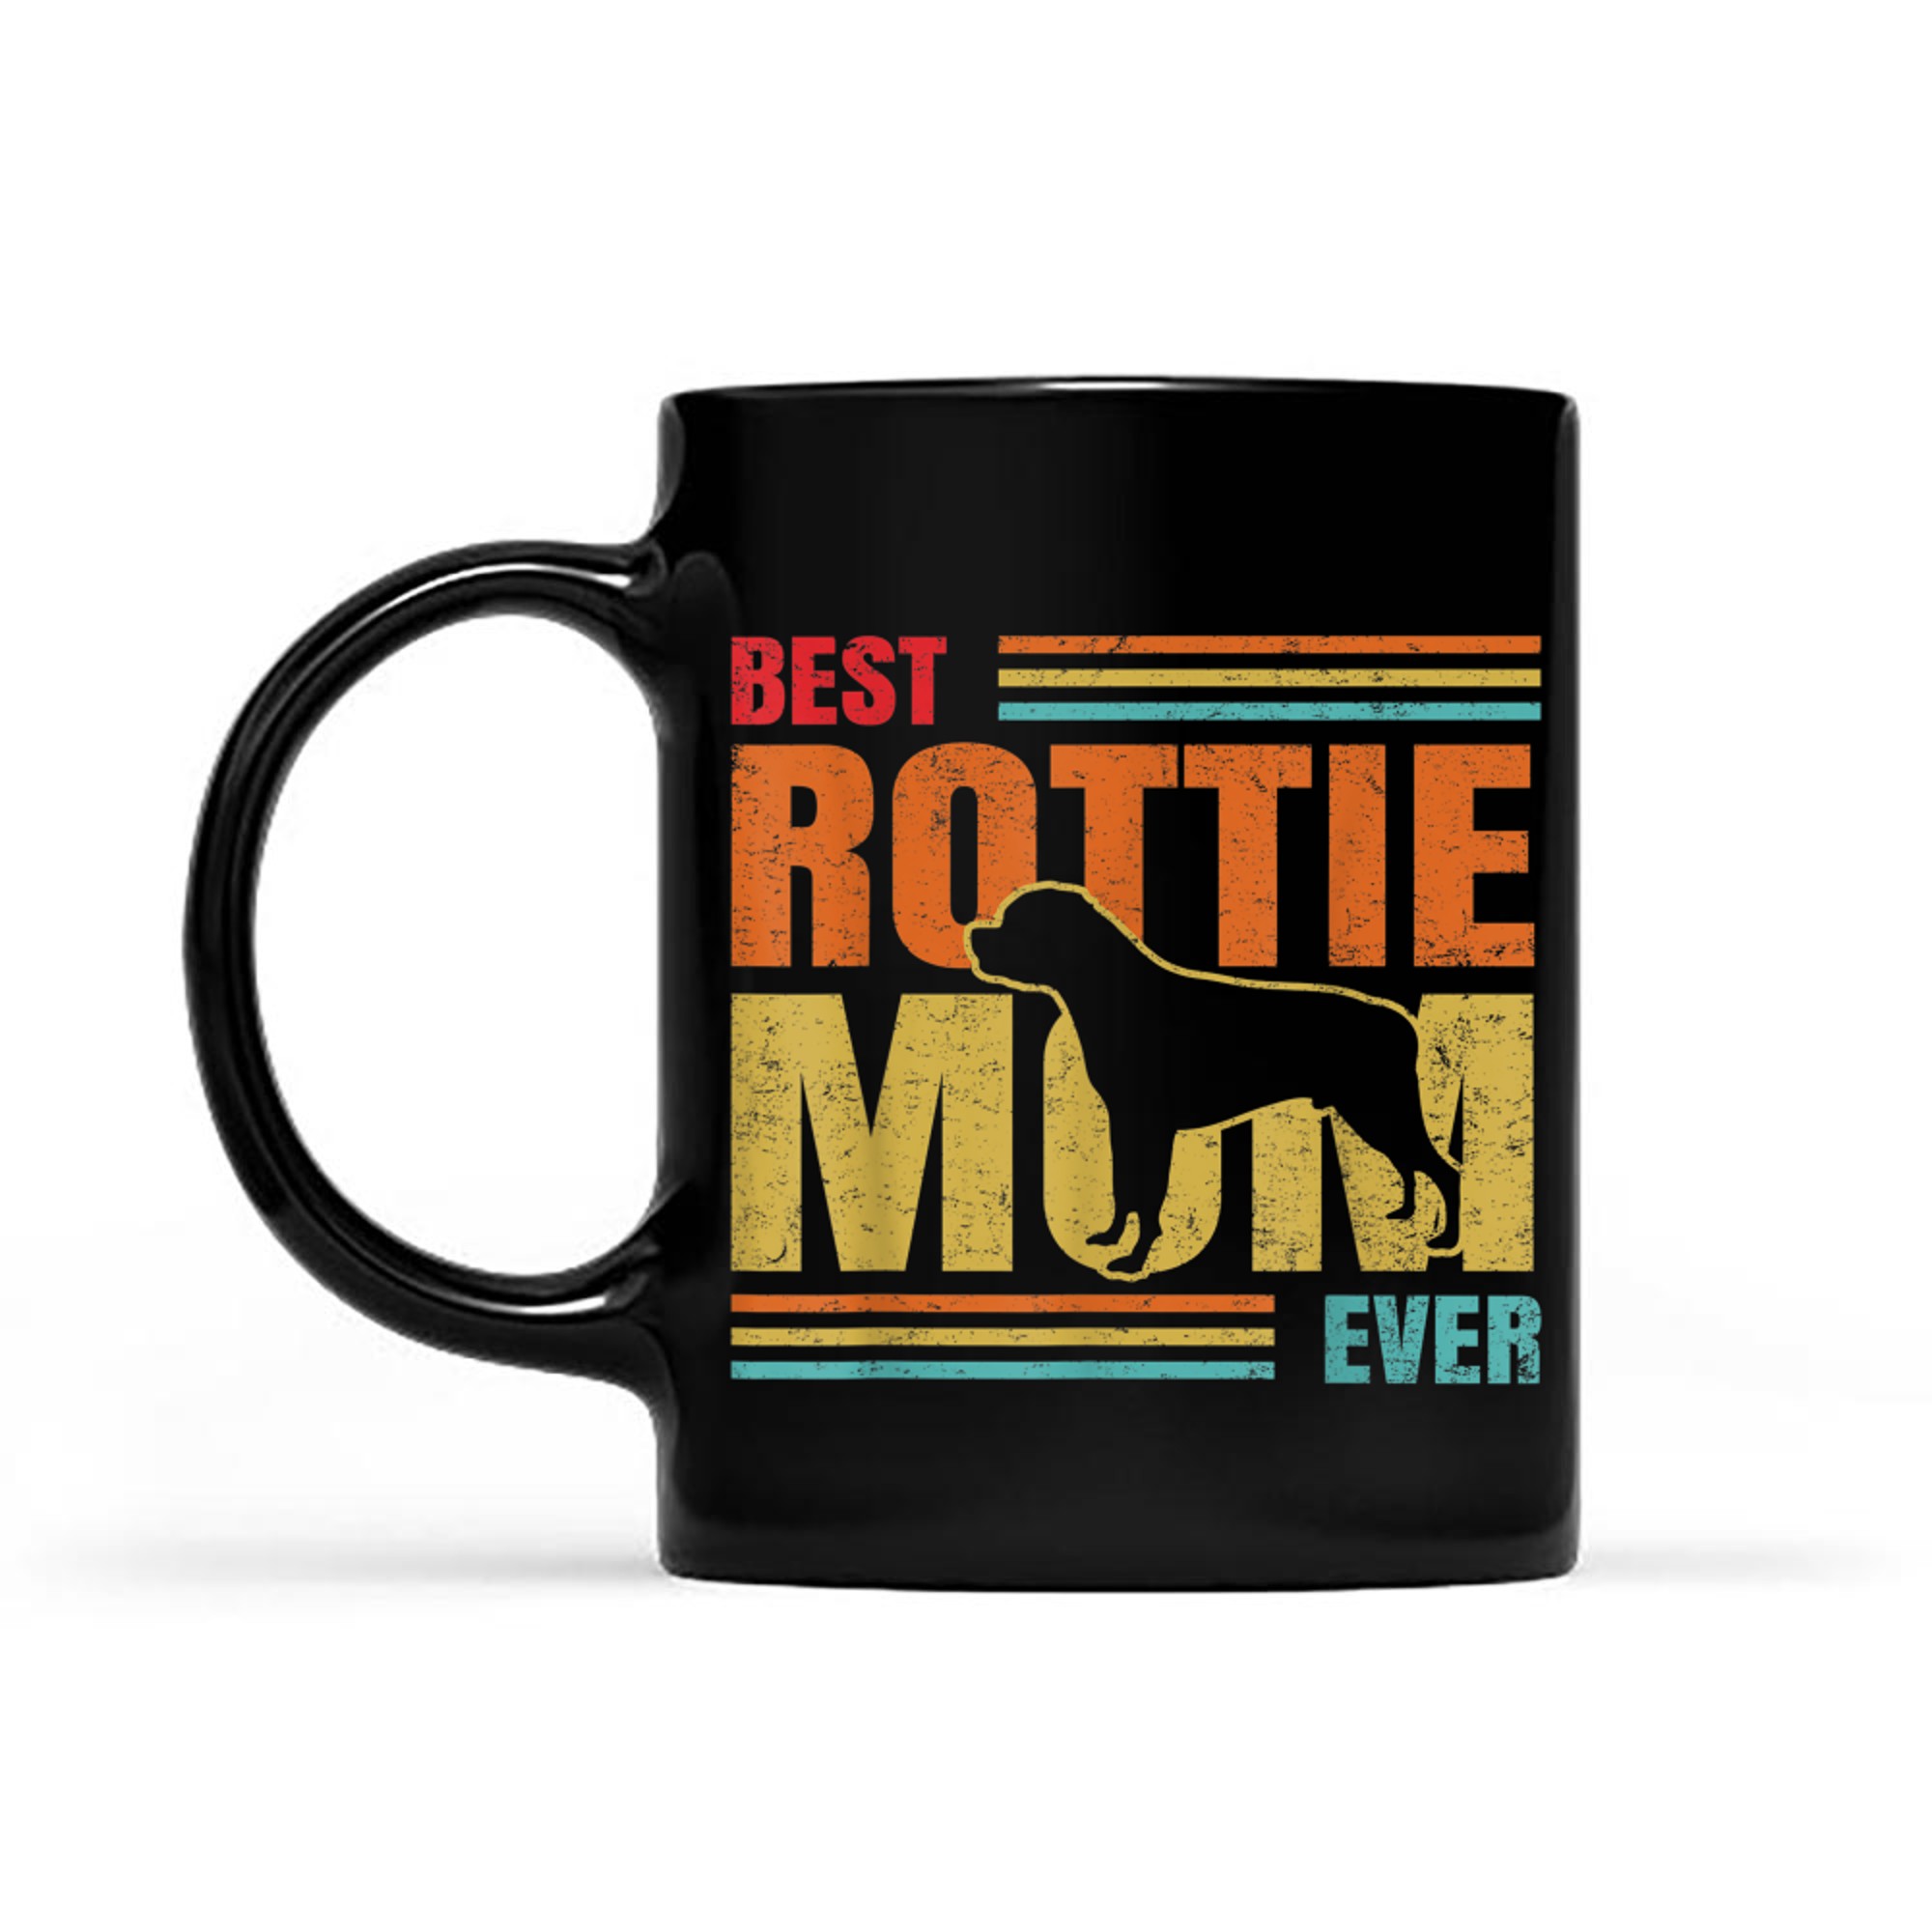 Best Rottie Mom Ever Rottweiler Dog Lover Mother Owner Gifts_1 mug black